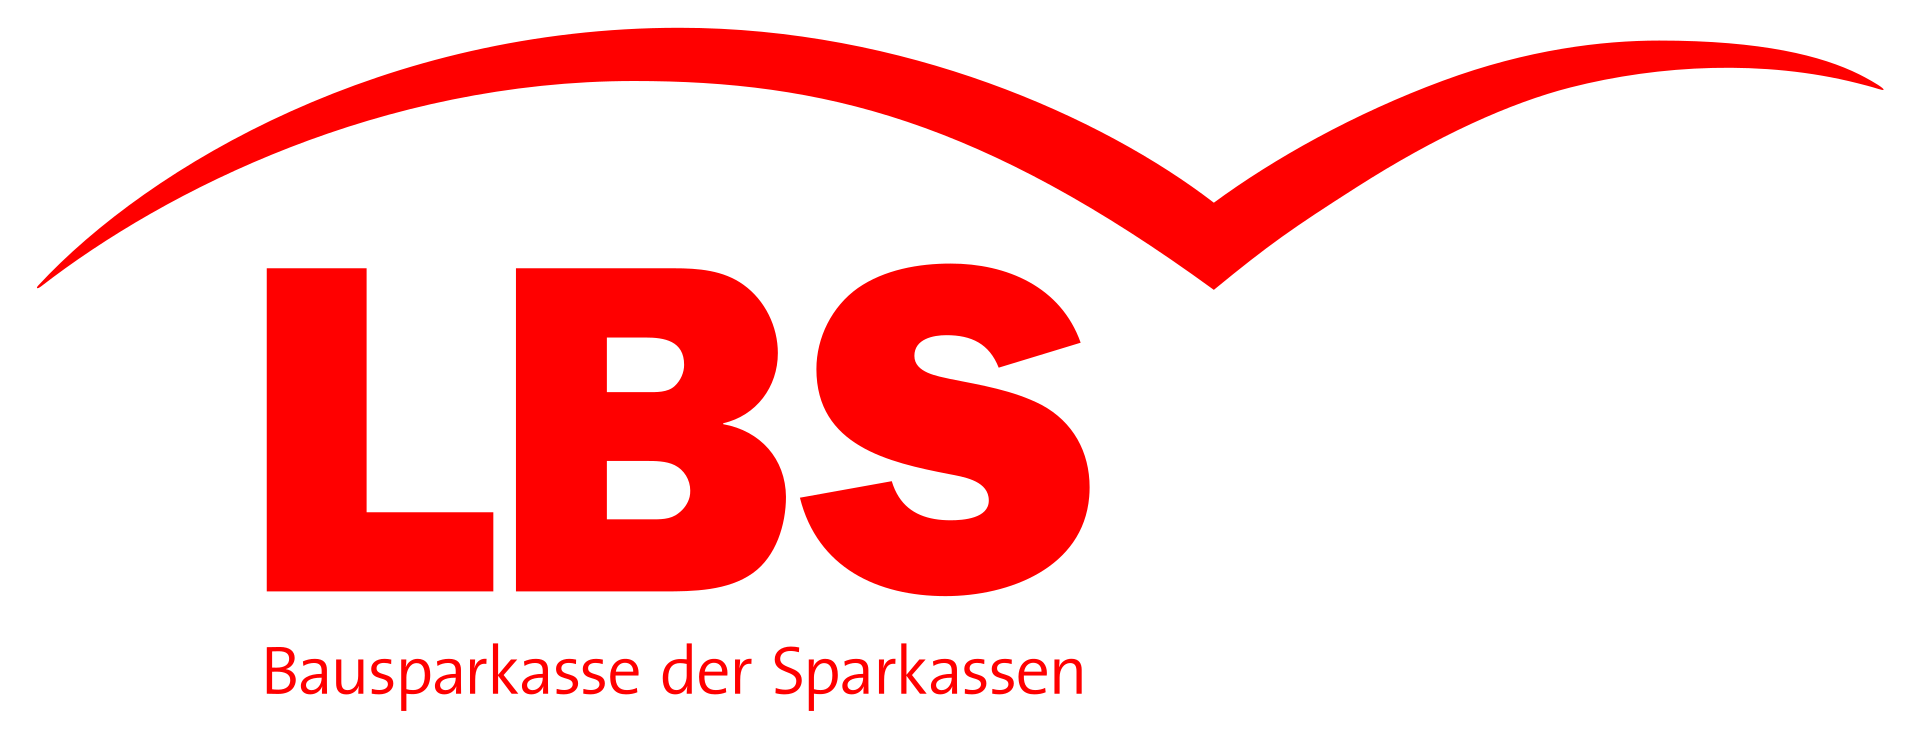 Logo: LBS – Bausparkasse der Sparkassen.